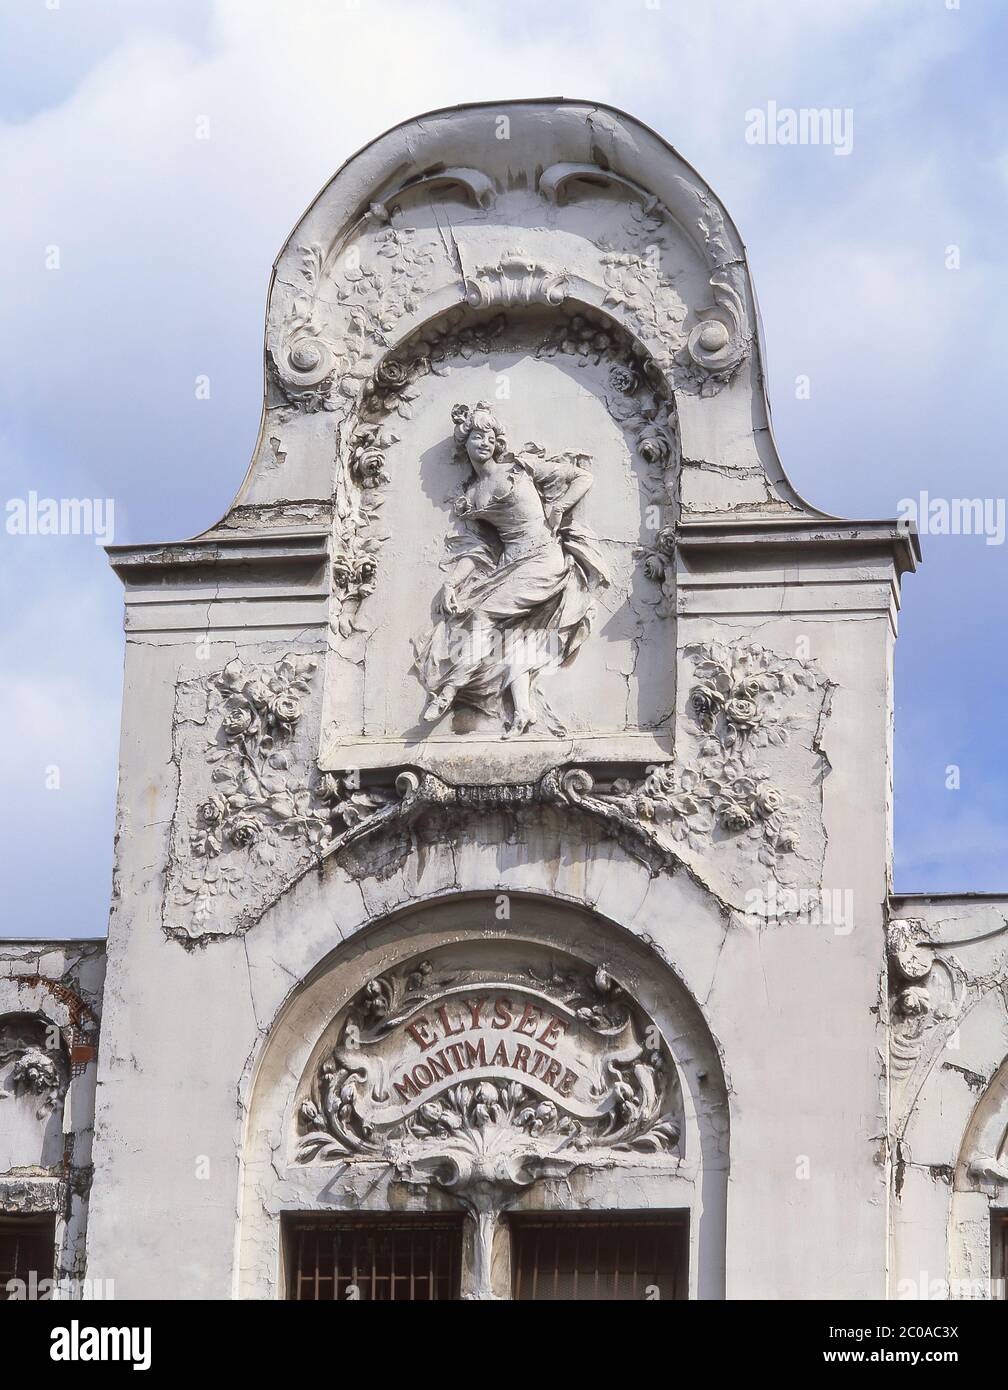 Ornate entrance to Élysée Montmartre Theatre, Boulevard de Rochechouart, Stock Photo